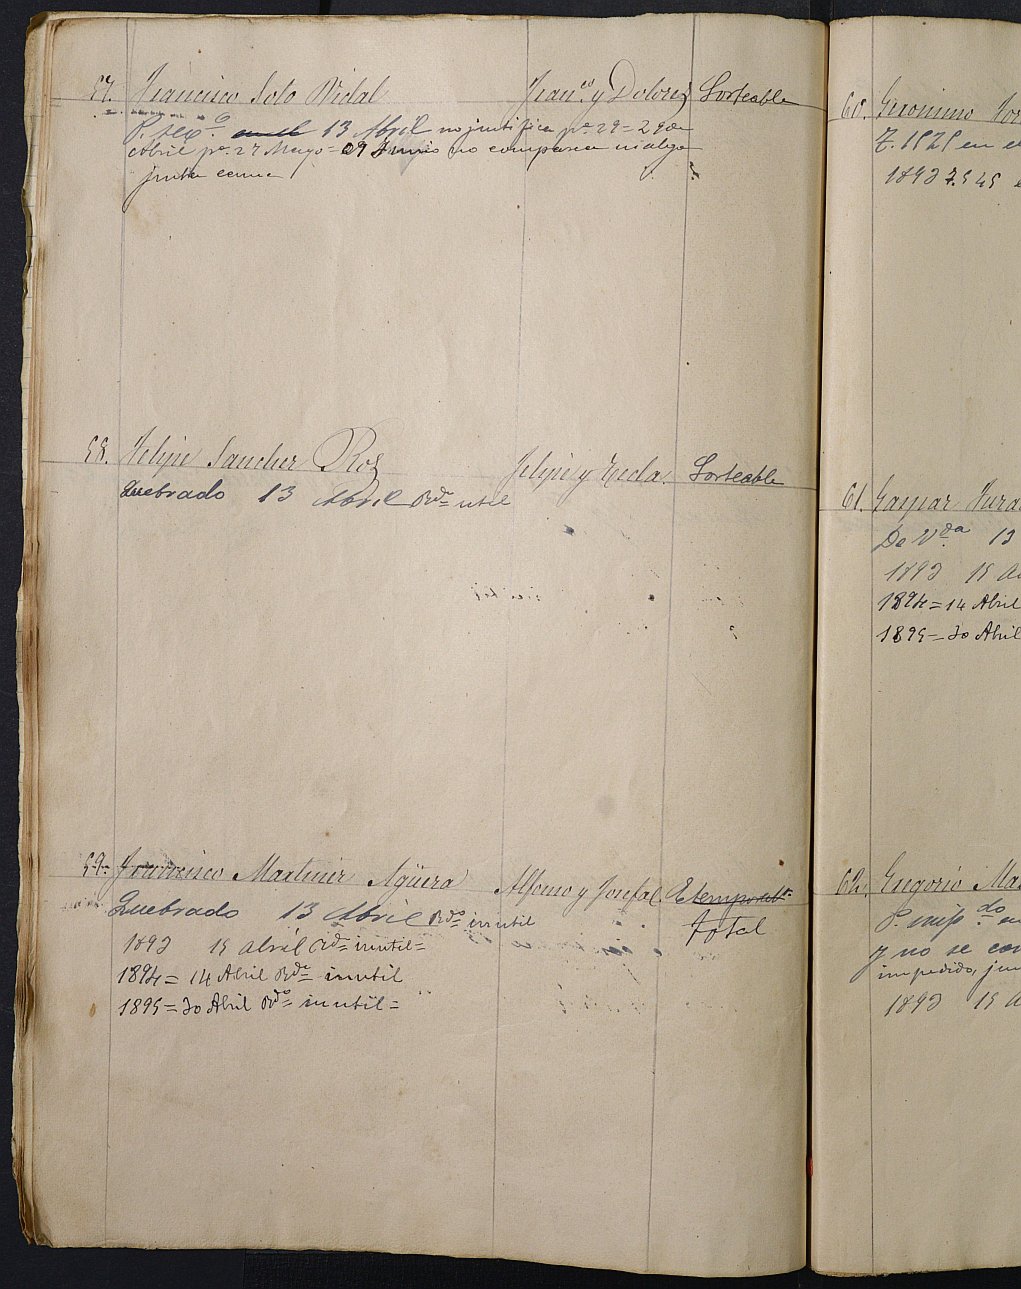 Relación de individuos declarados soldados e ingresados en Caja de la Sección 4ª del Ayuntamiento de Cartagena de 1892.